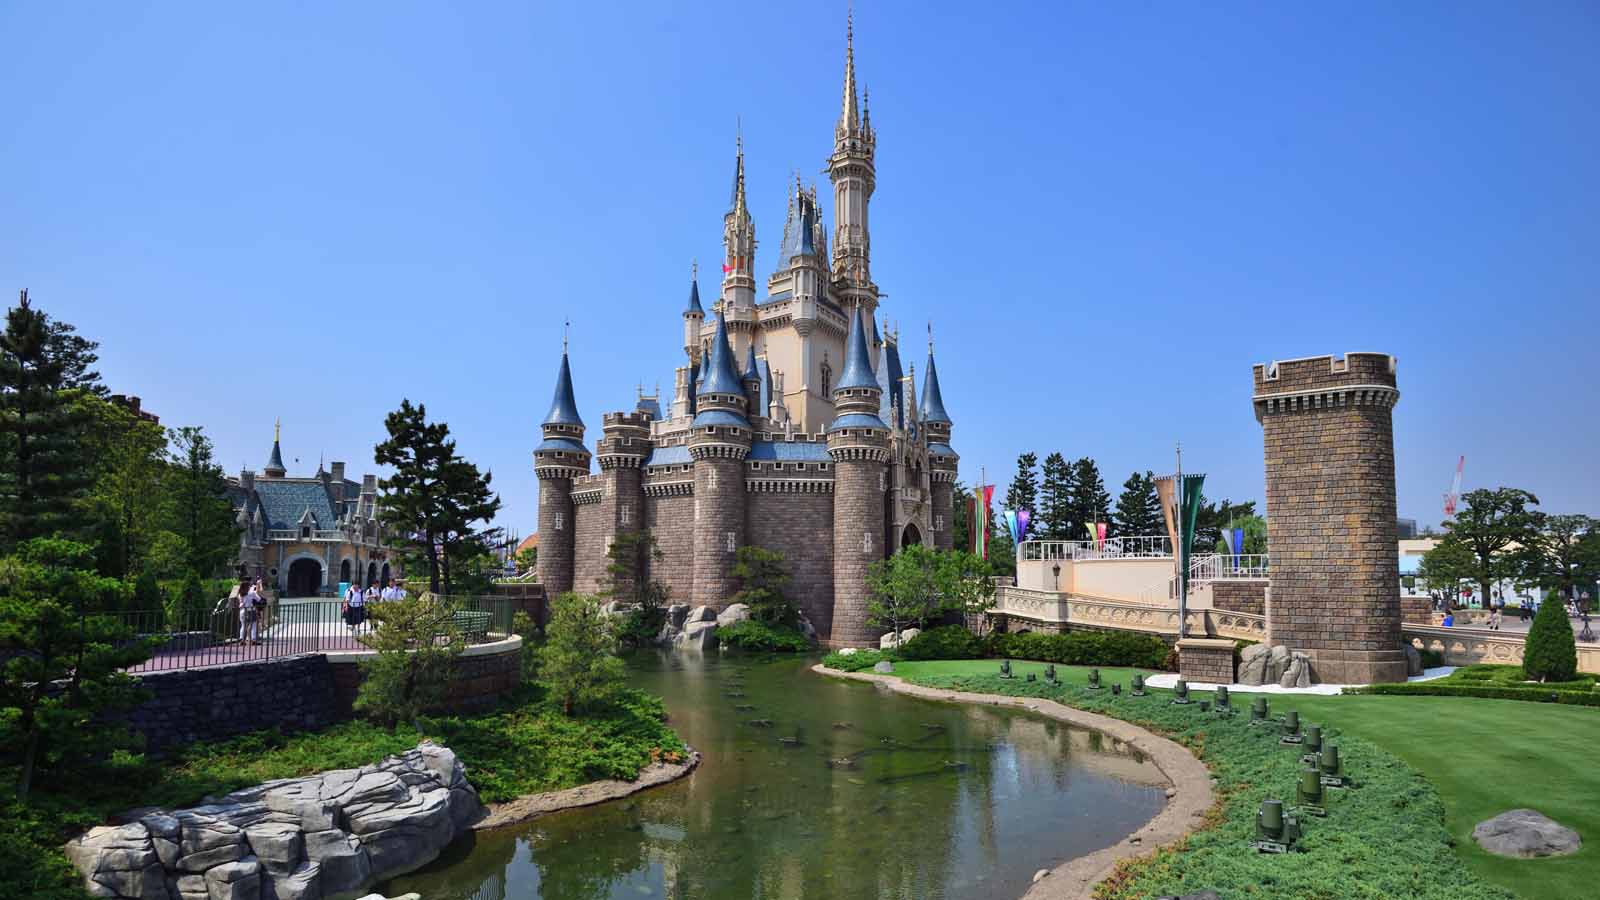 ディズニー休園 東京ディズニーランド 東京ディズニーシー 年2月29日から4月19日までの臨時休園が決定 Disney Colors Blog